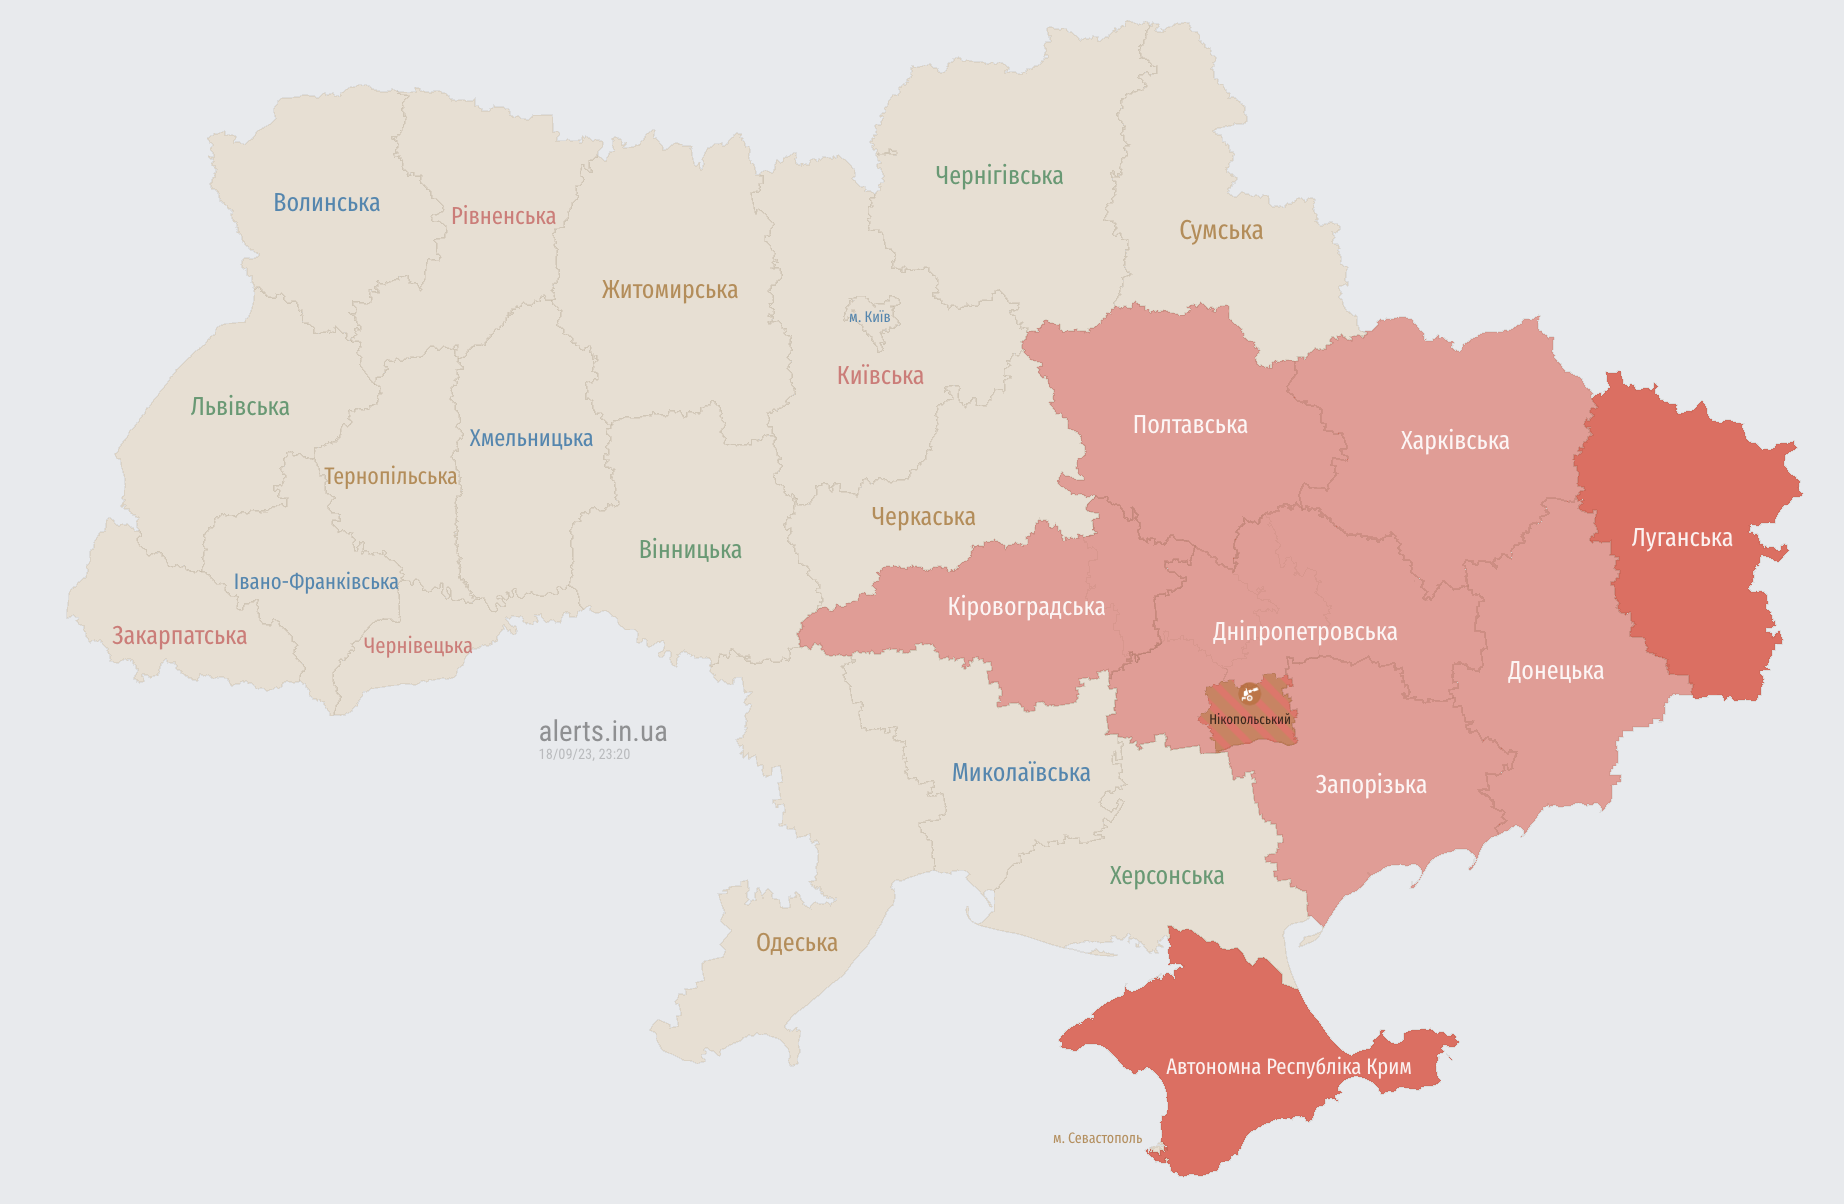 Воздушная тревога в ряде областей Украины: есть угроза ударных БПЛА